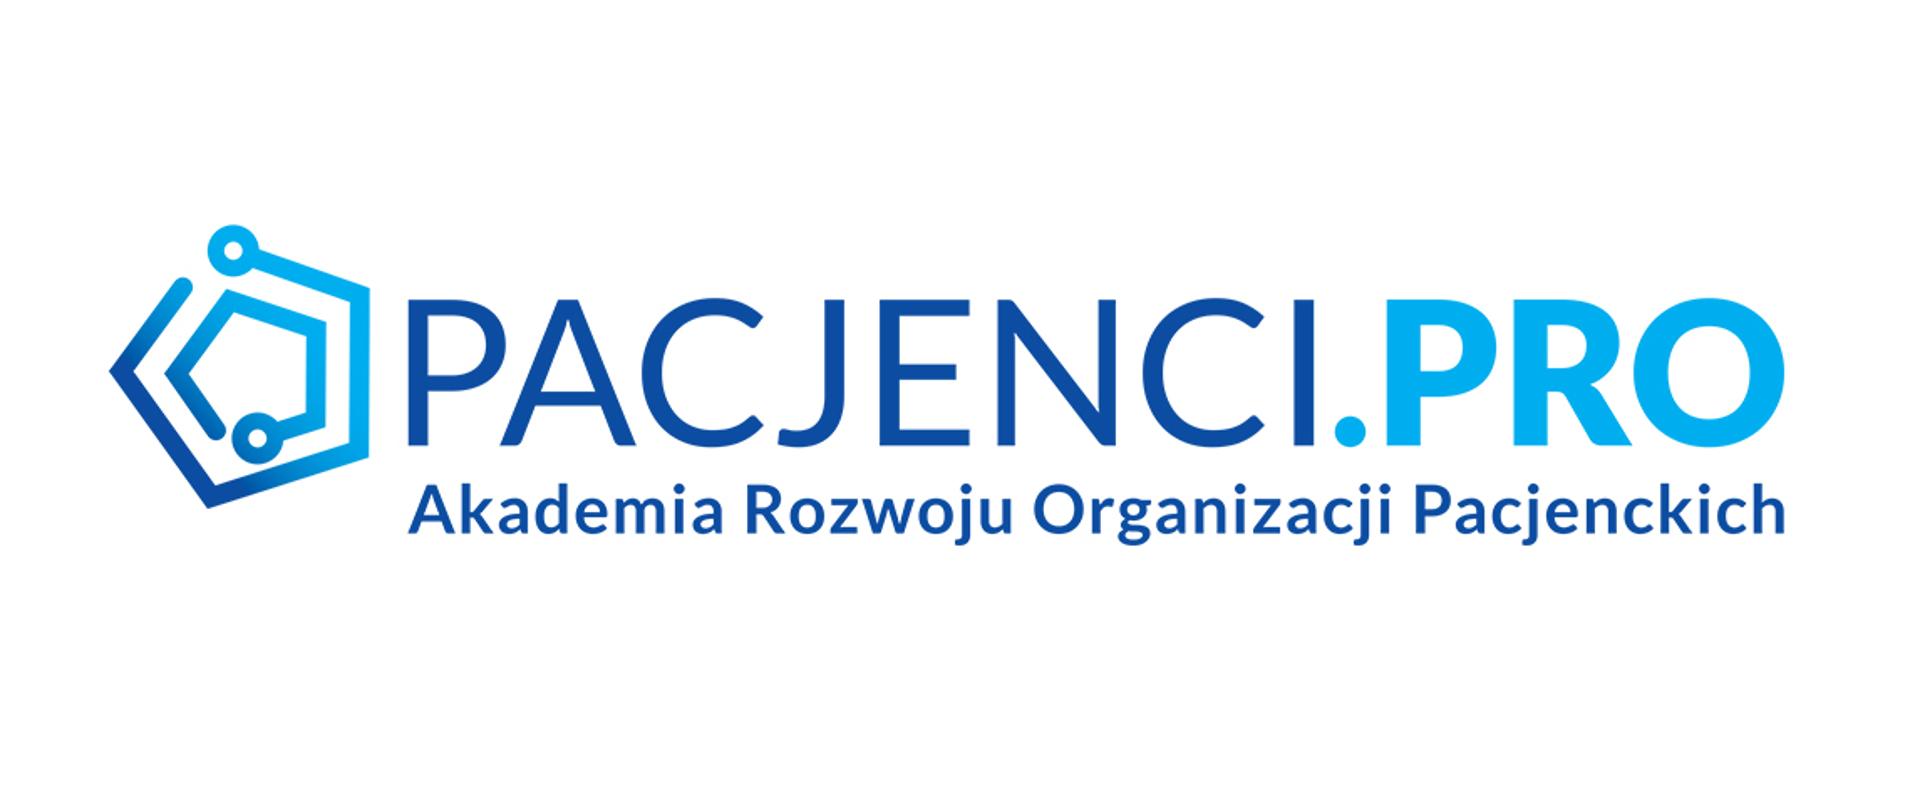 Logotyp Akademii Rozwoju Organizacji Pacjenckich Pacjenci.PRO